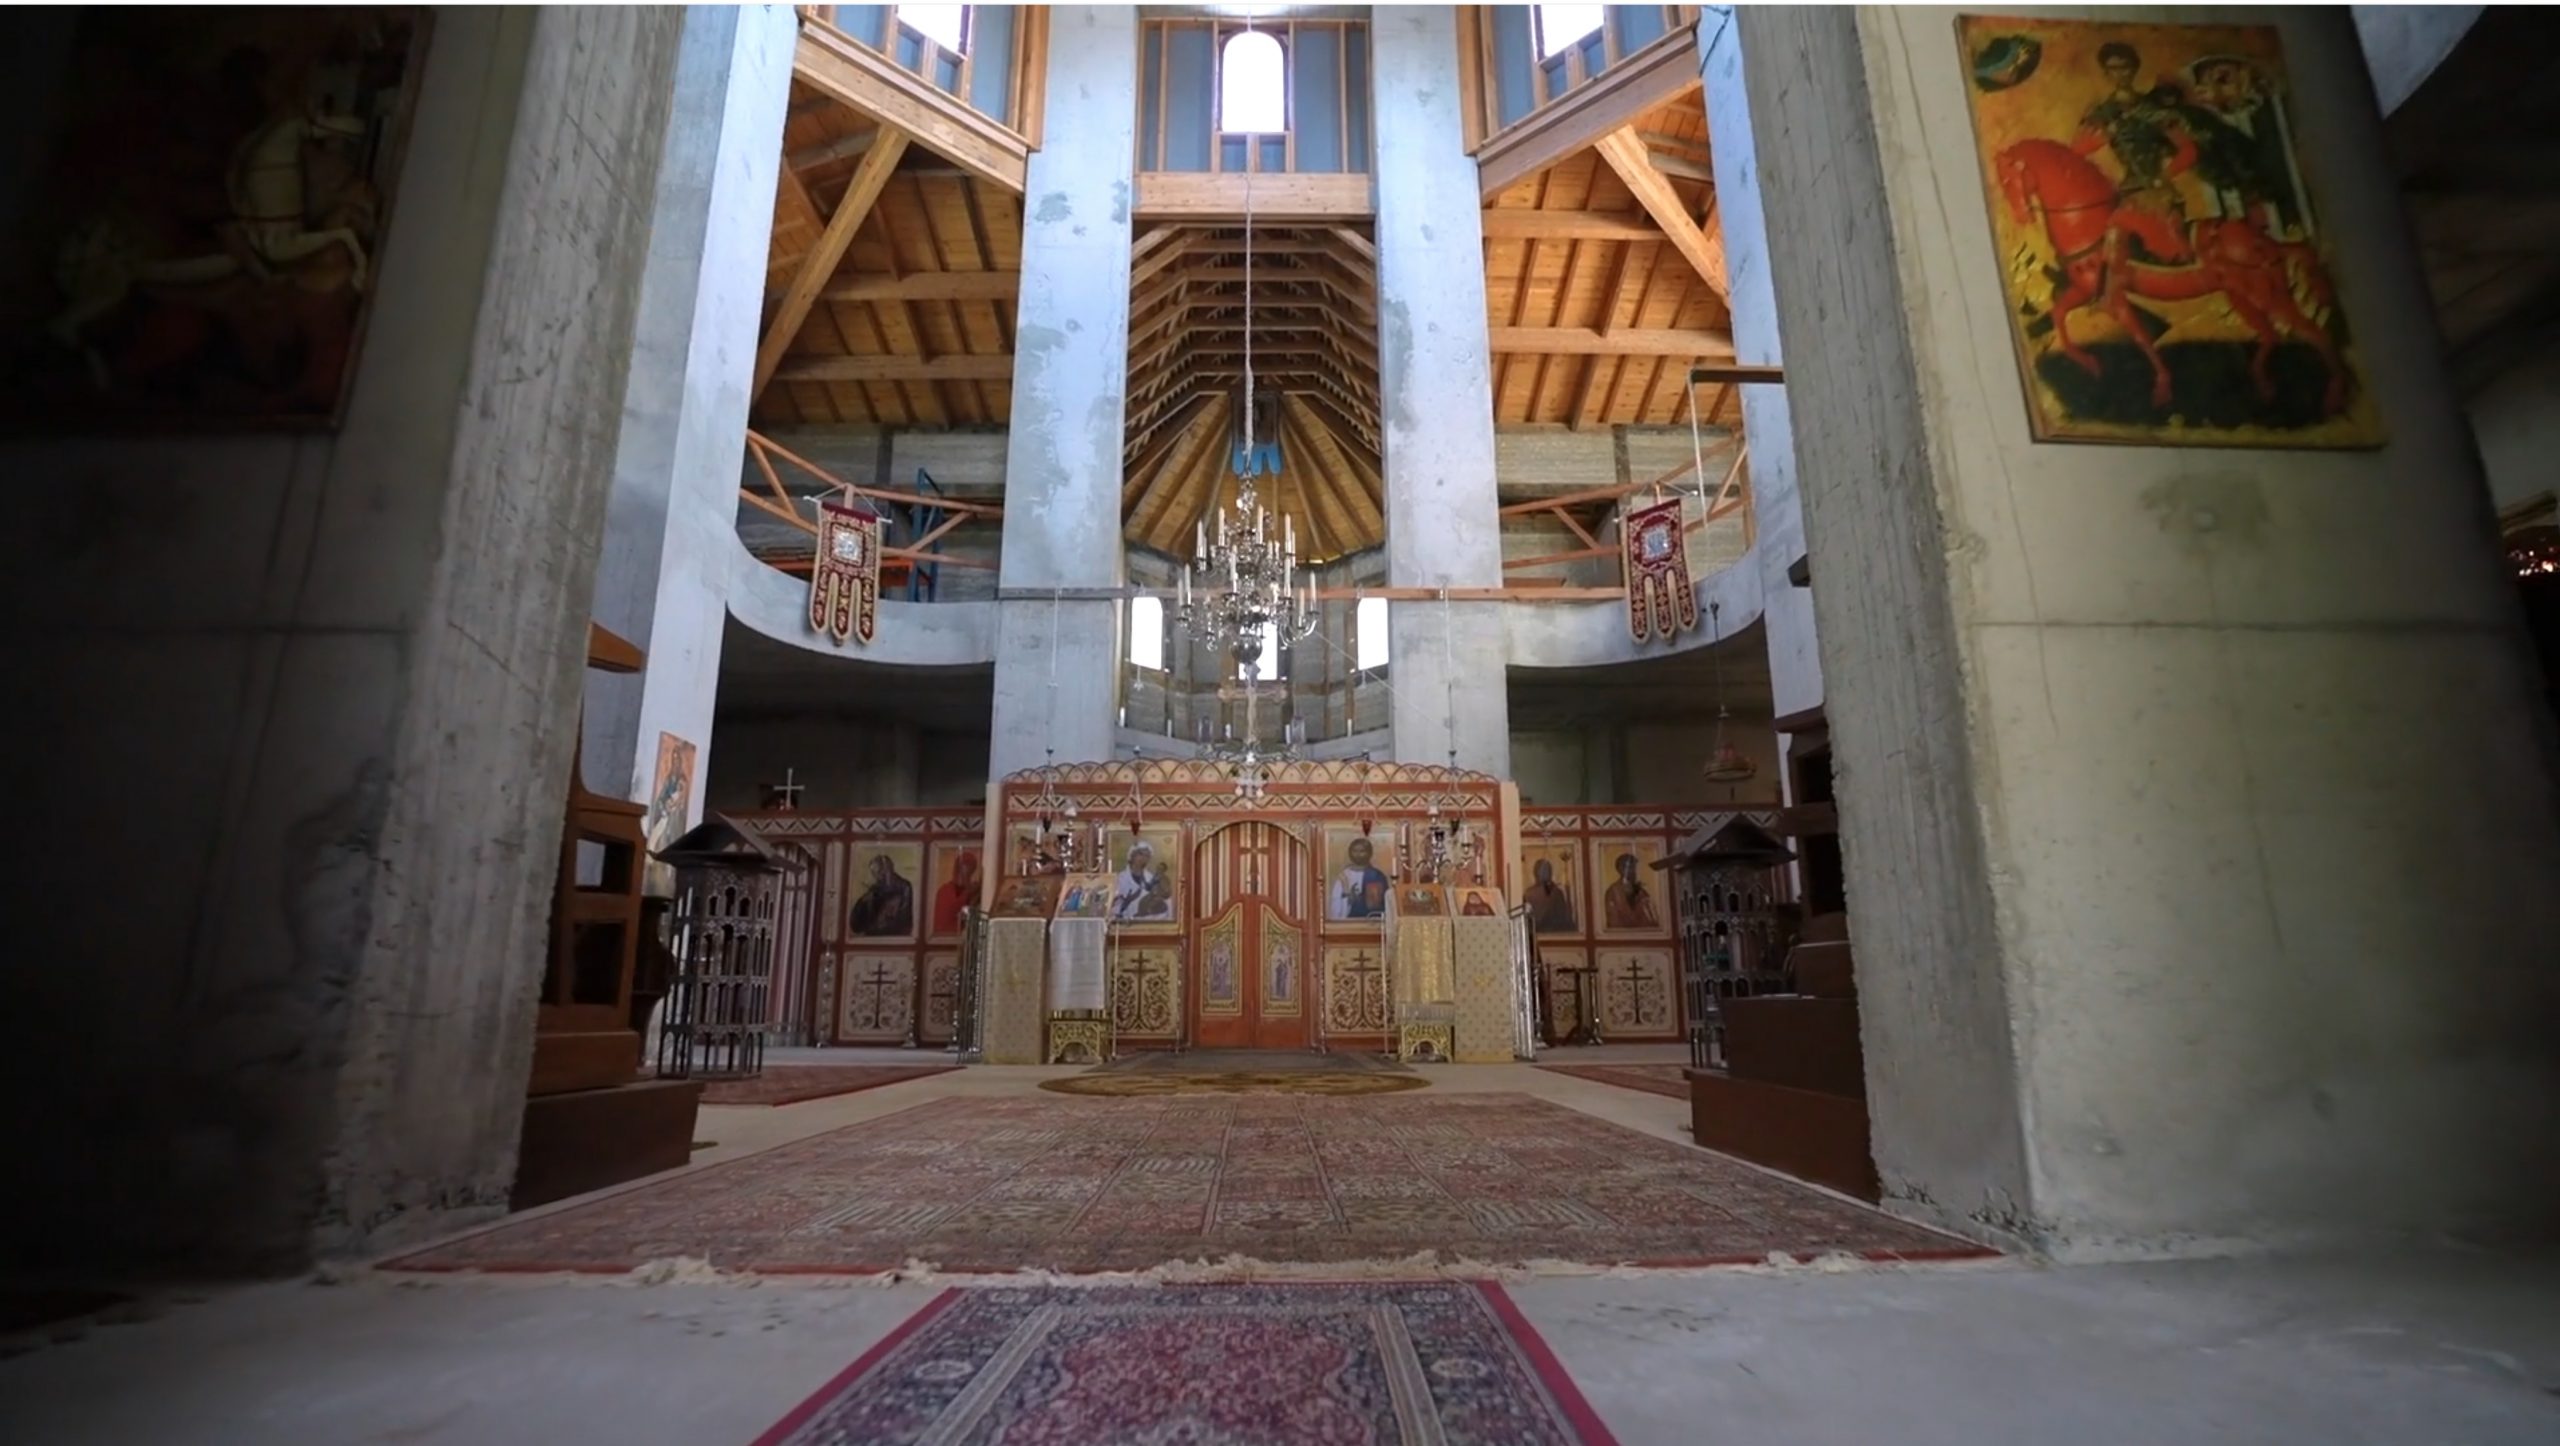 France 2 : « mystagogie de l’architecture orthodoxe -2e partie » – dimanche 7 novembre à 9h30